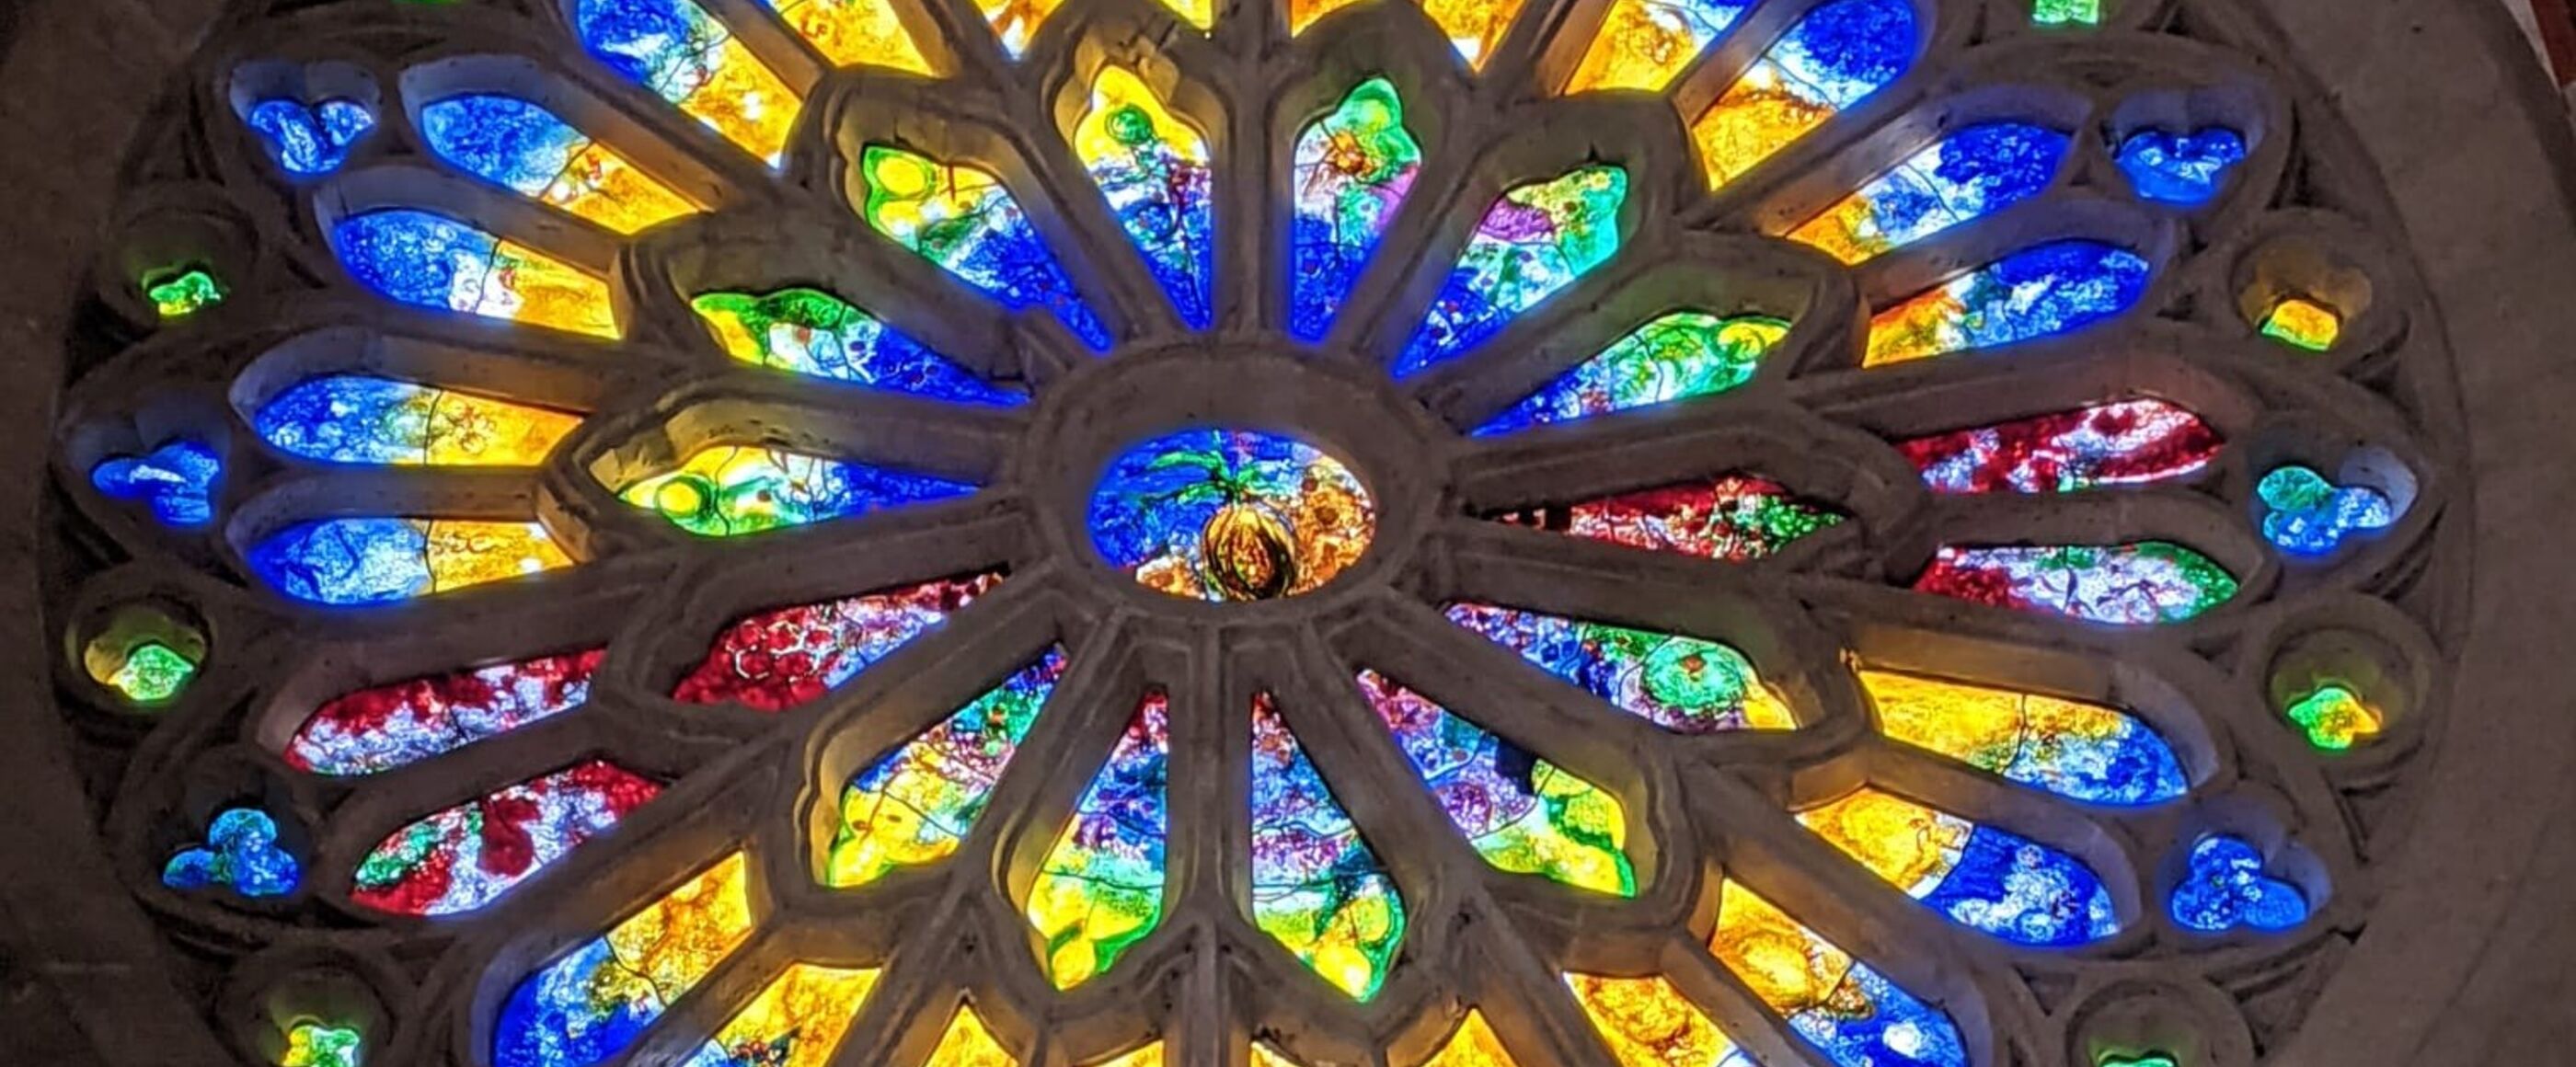 Ein Buntglasfenster in einer Kirche.